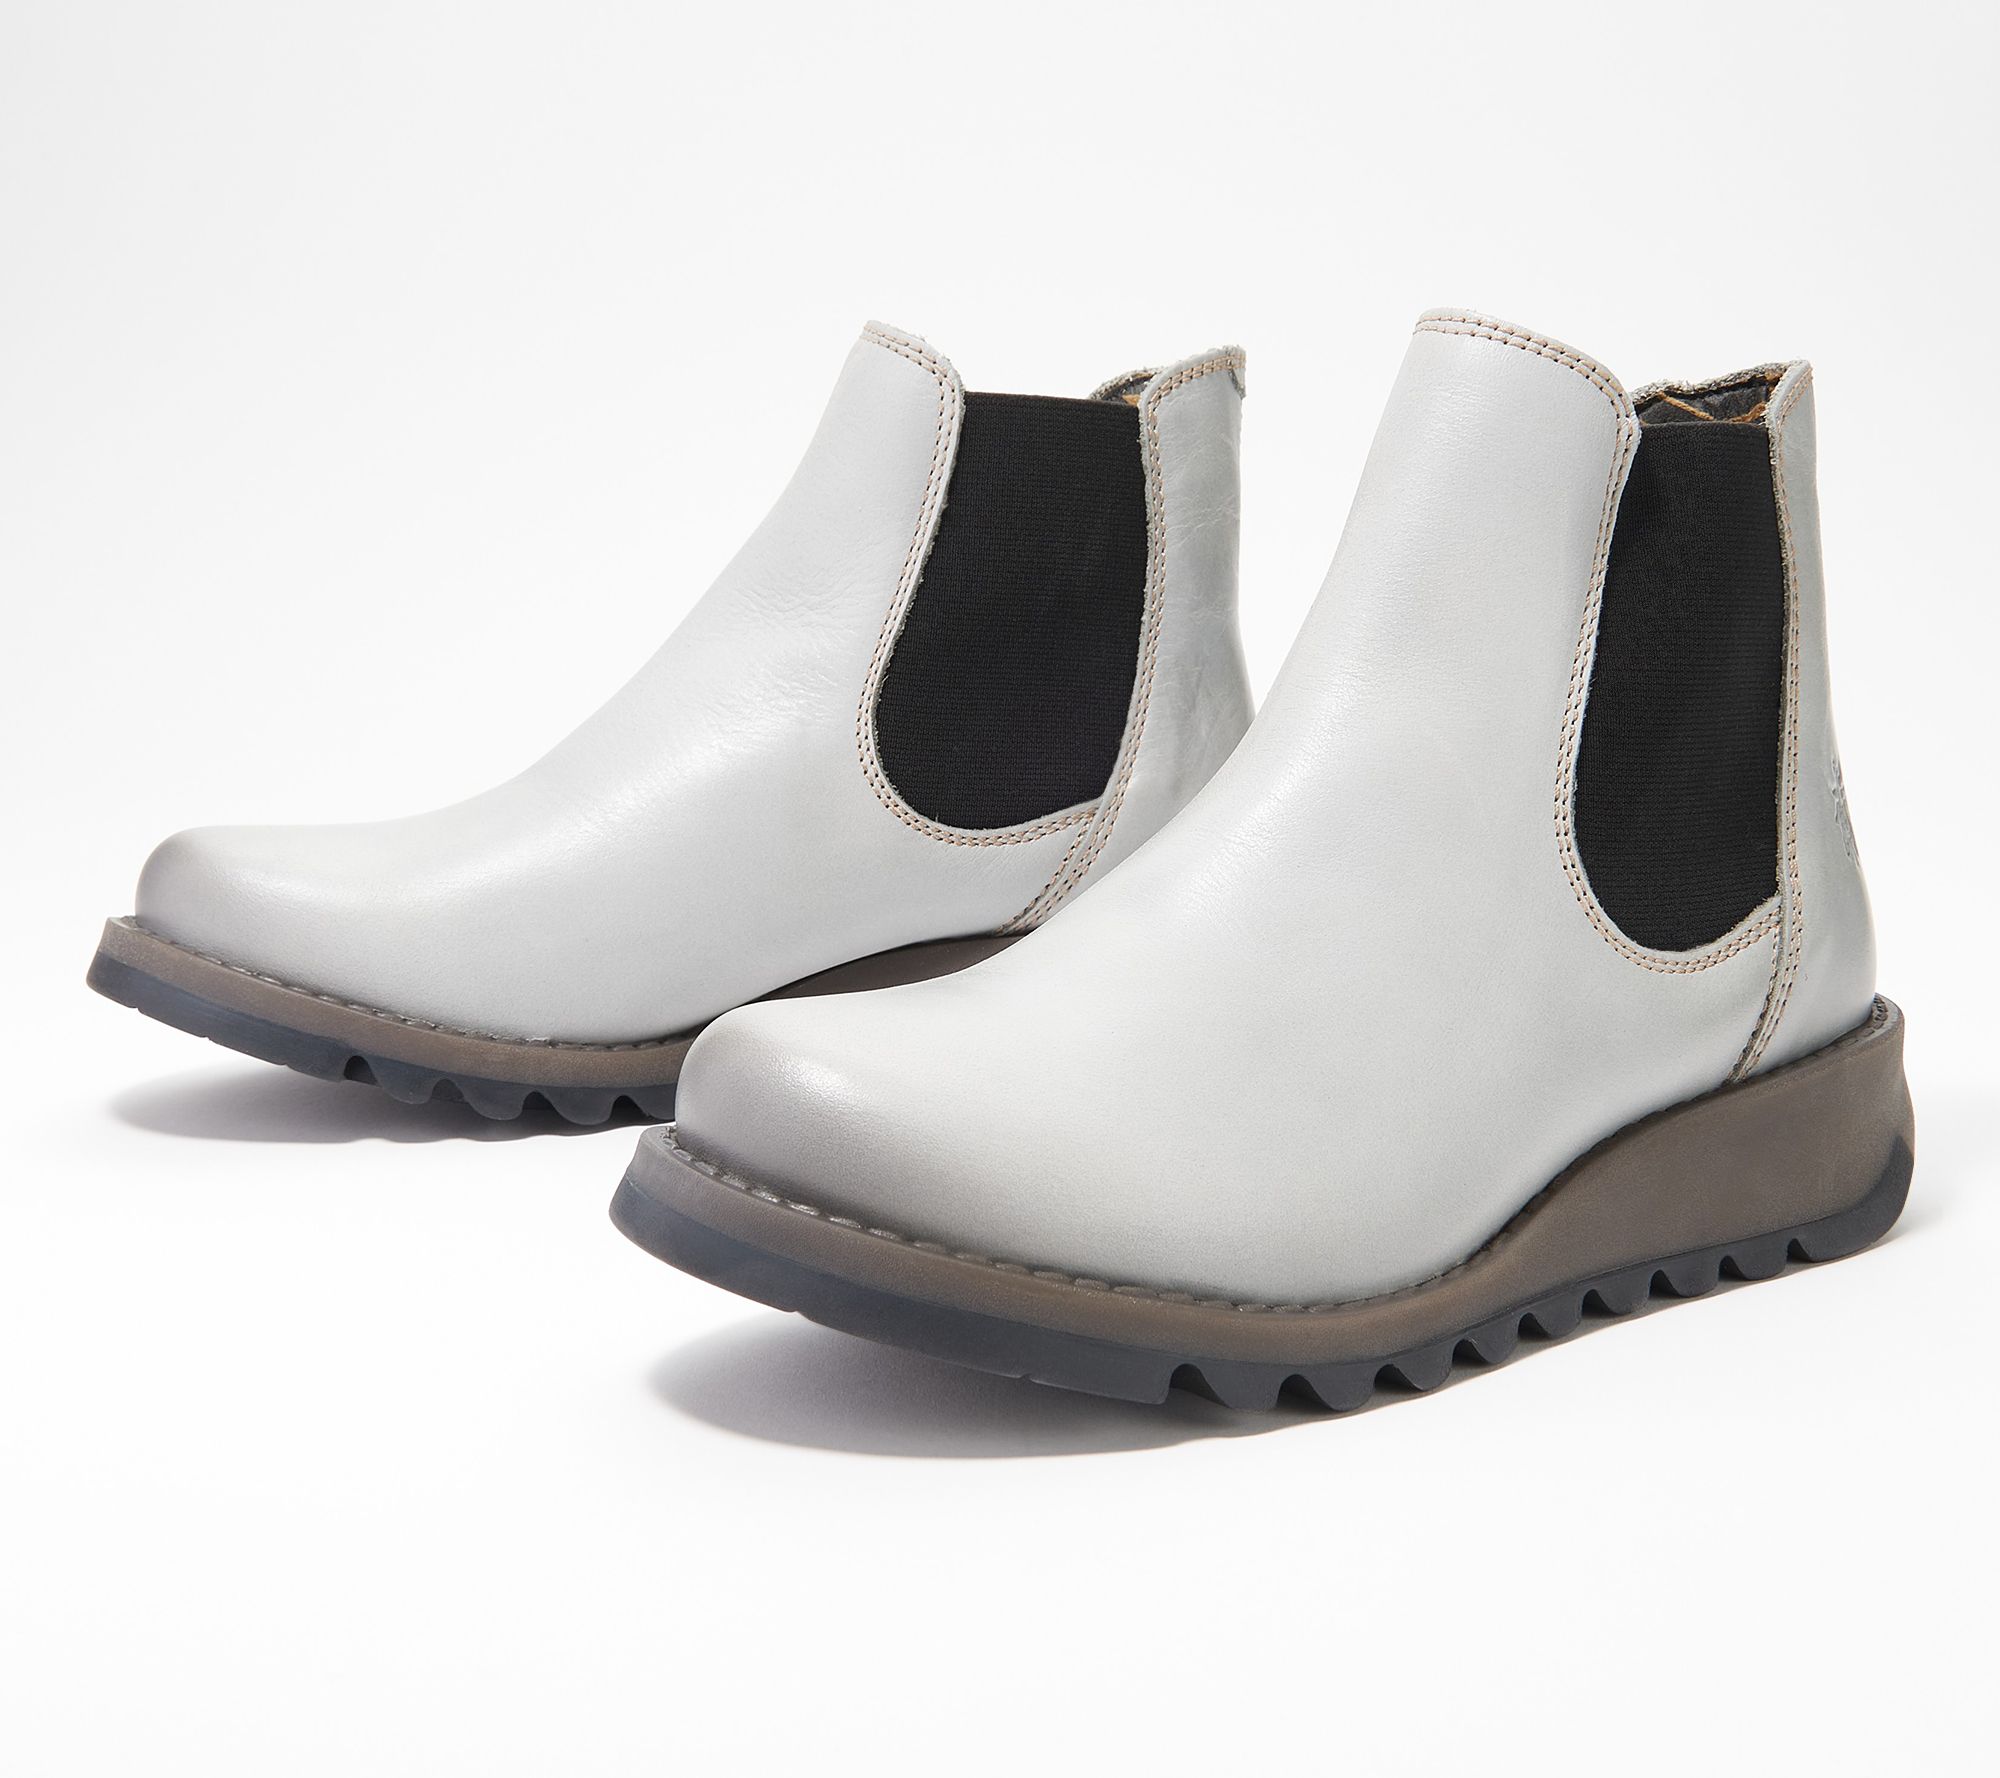 Alternativt forslag Eksperiment Få FLY London Leather Chelsea Boots - Salv - QVC.com